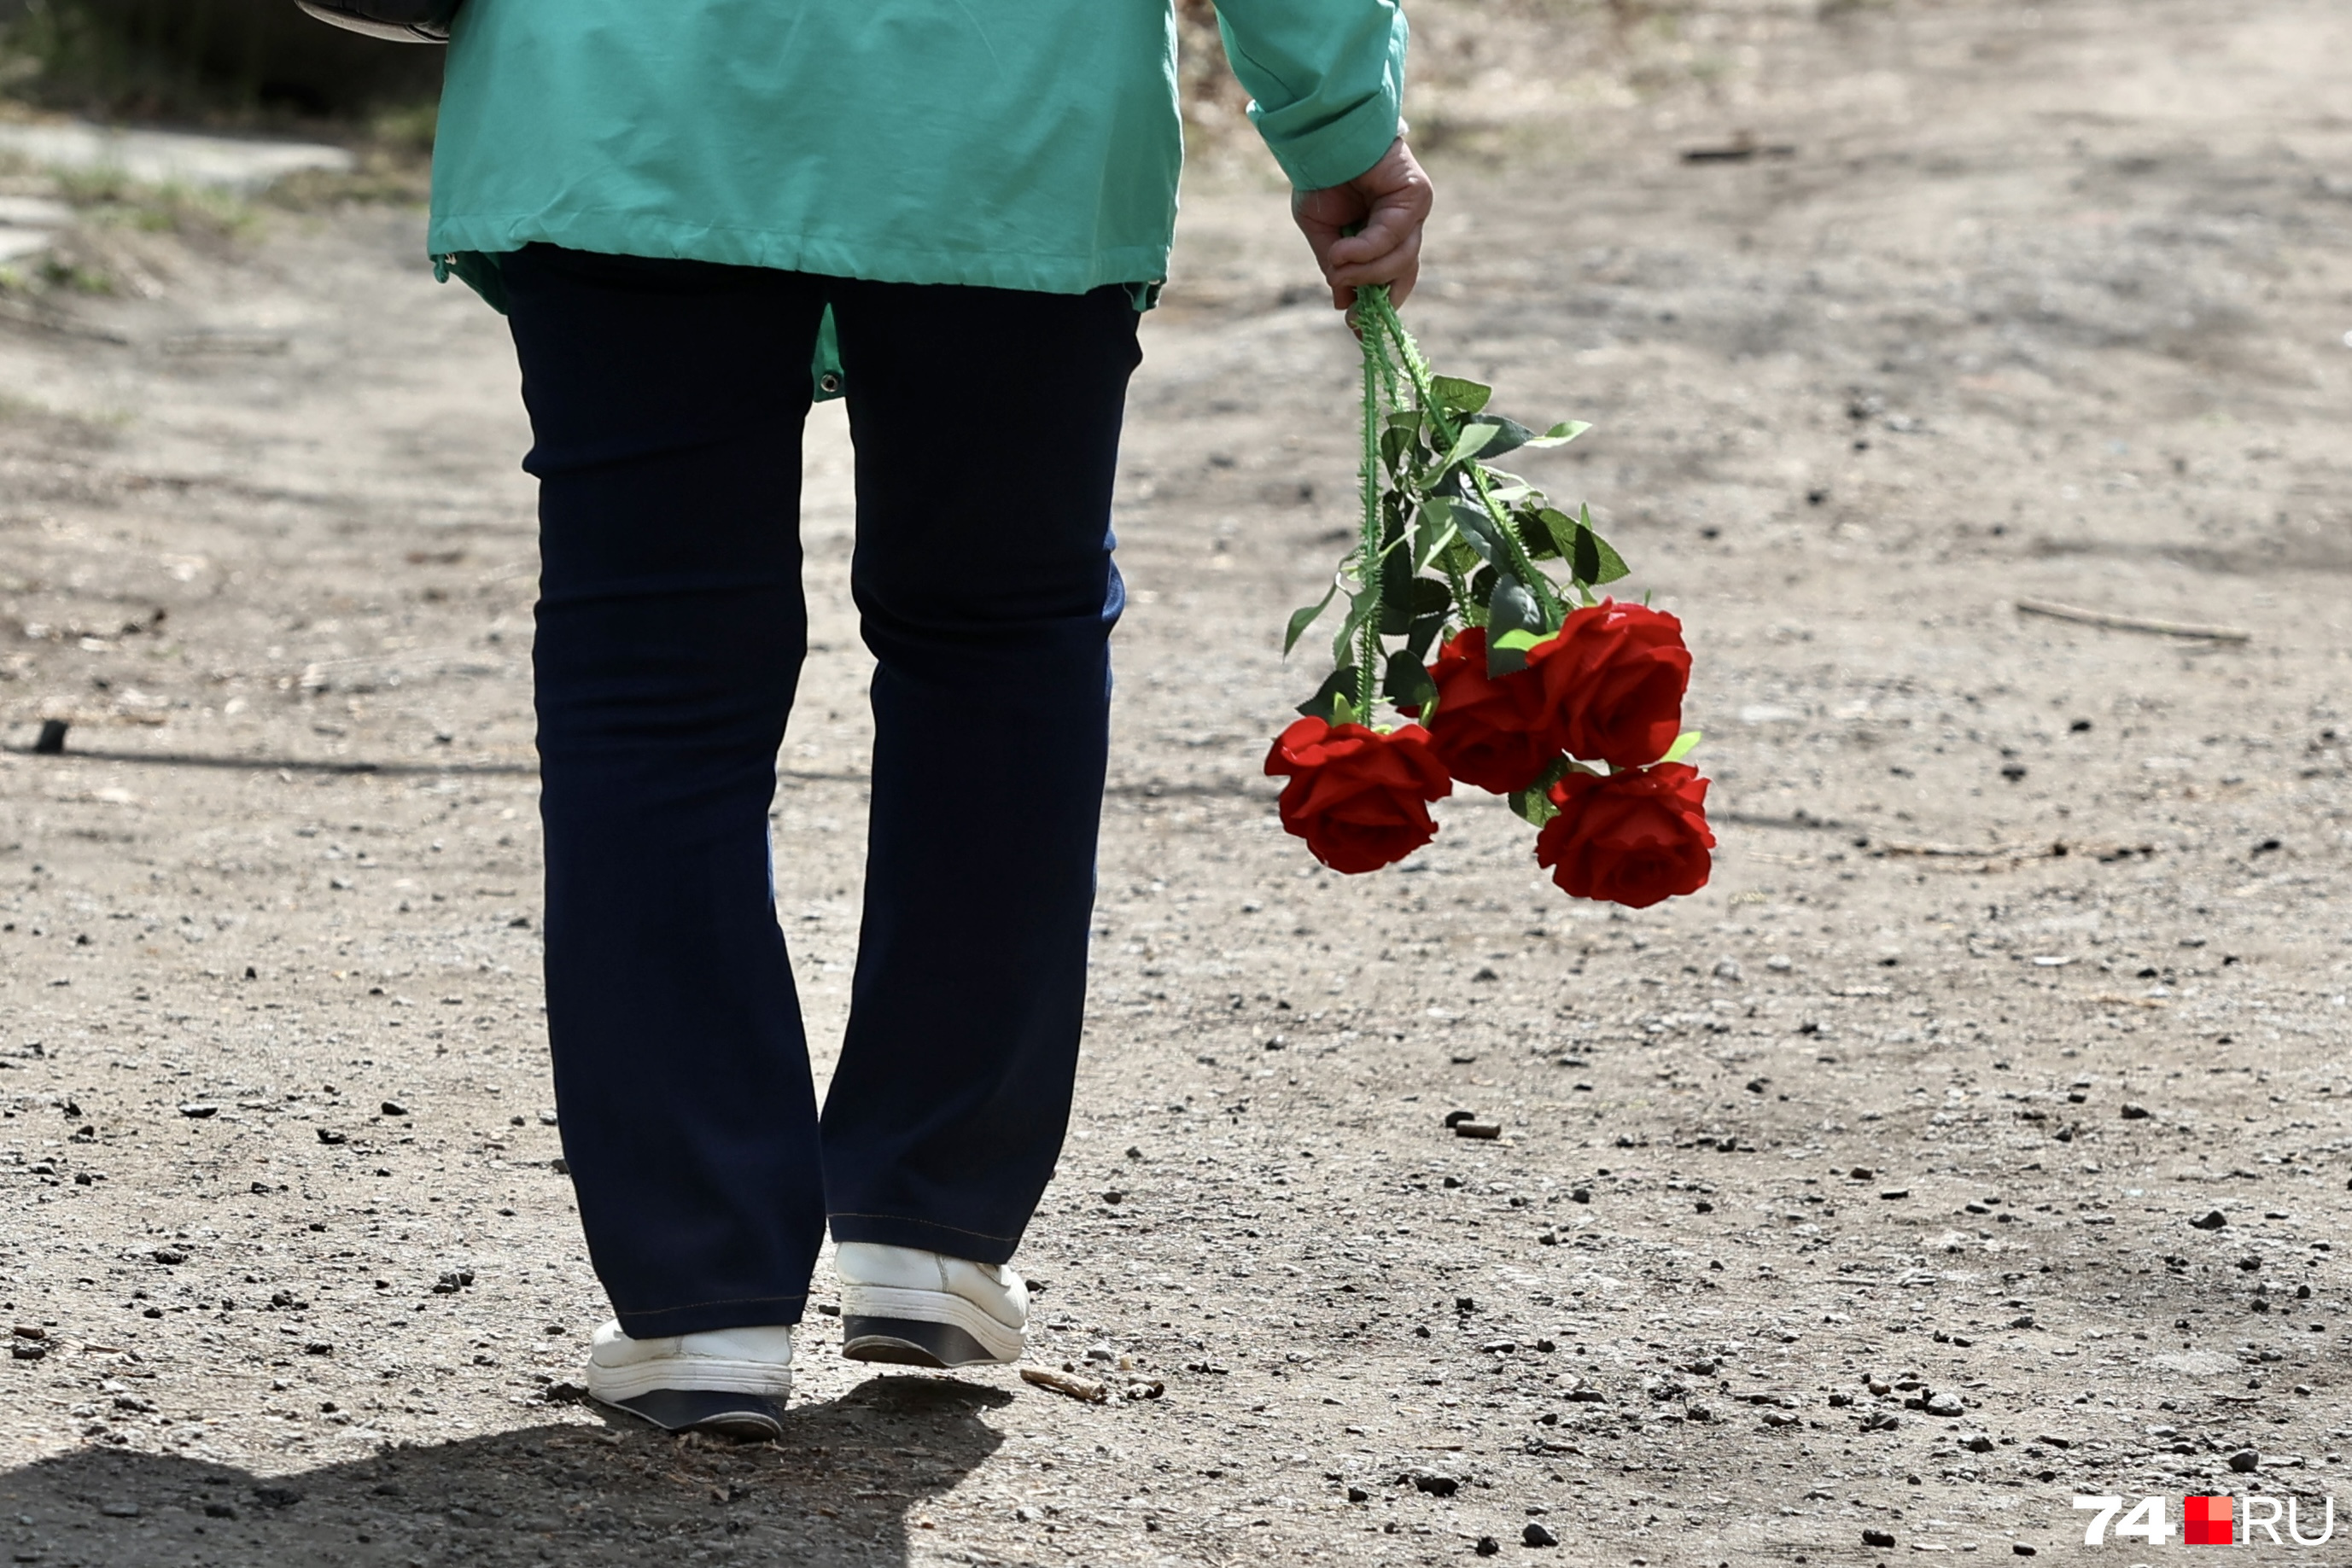 Дополнительные автобусы пустят к кладбищам Кемерова на Родительский день: подробная схема движения